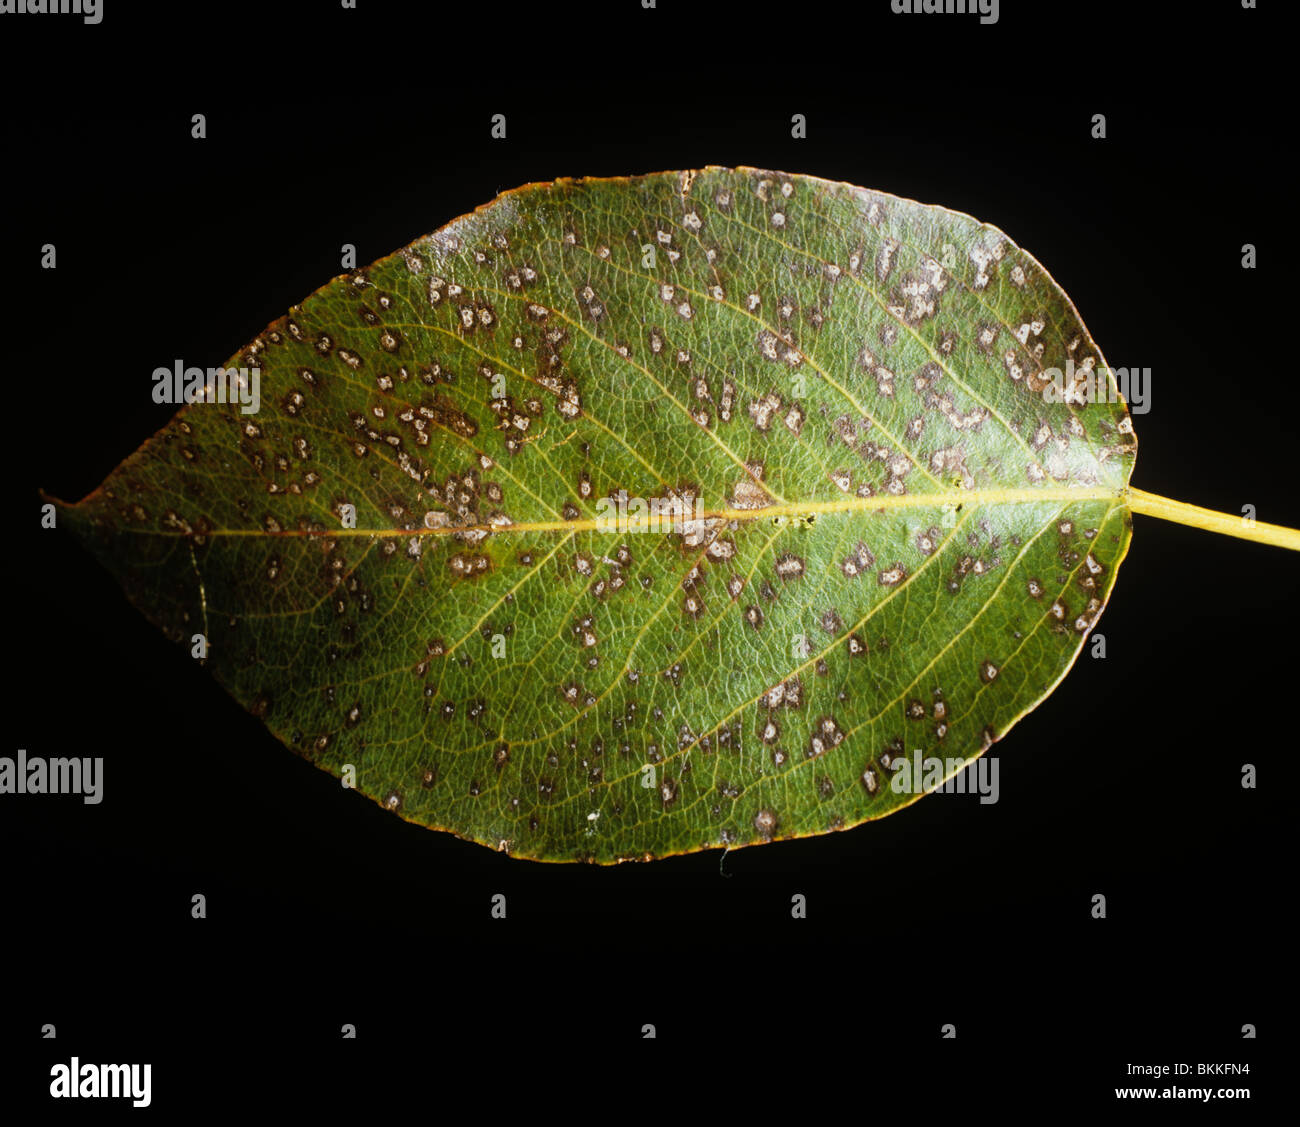 Fabrea leaf spot (Fabra maculata) spotting on a pear leaf, USA Stock Photo